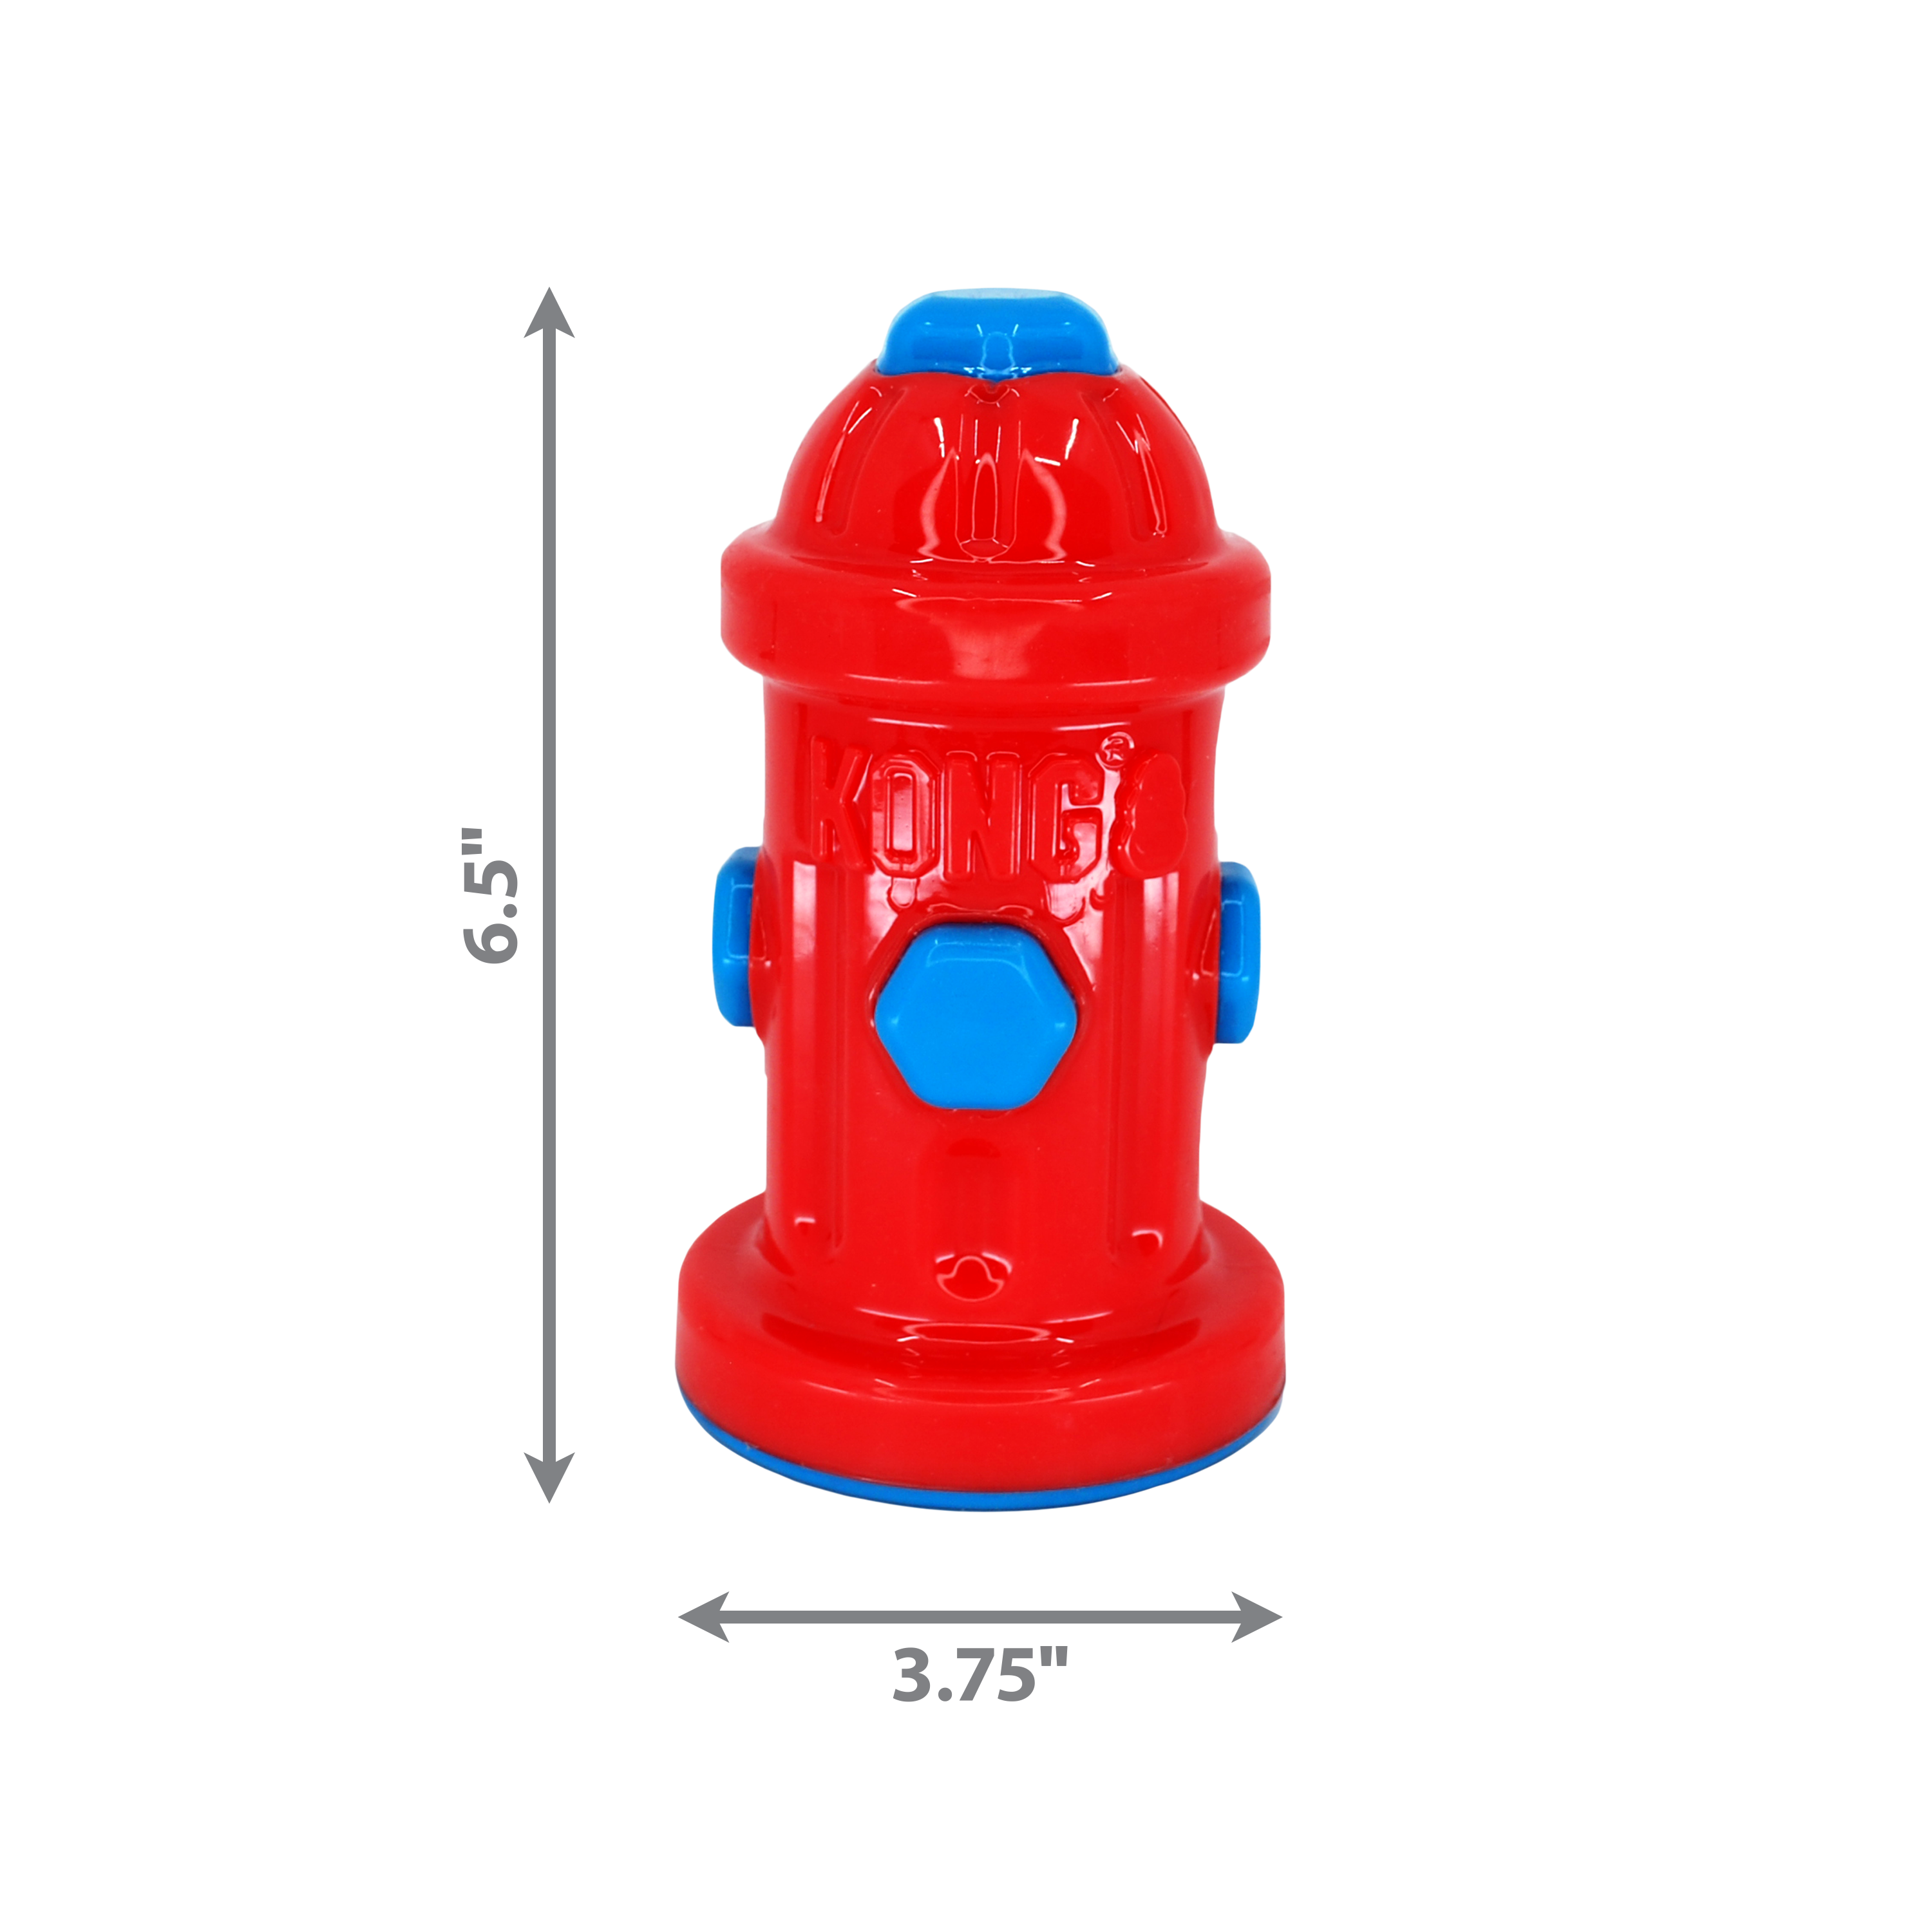 Eon Fire Hydrant dimoffpack image du produit